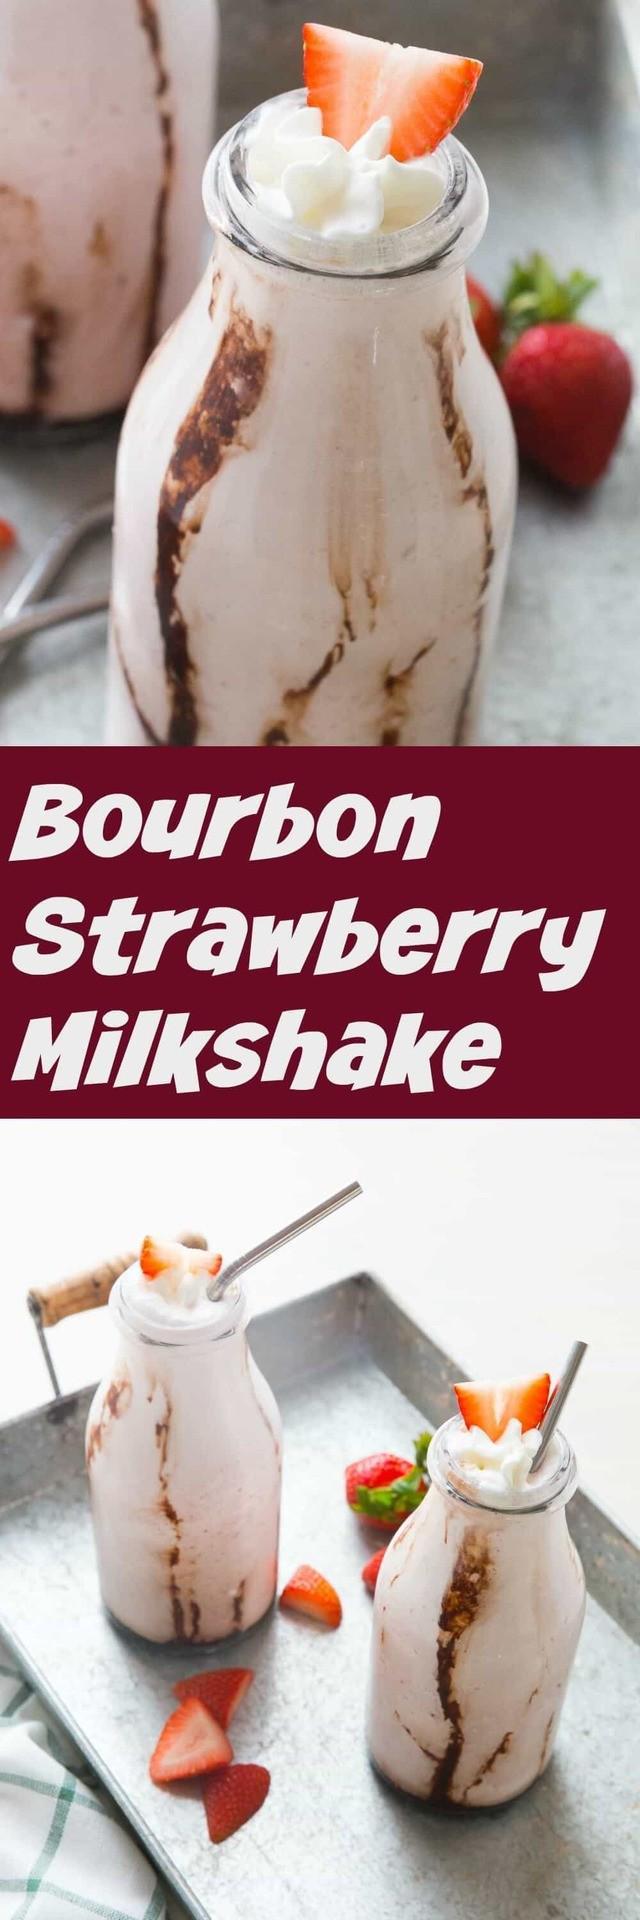 รูปภาพ:https://www.lemonsforlulu.com/wp-content/uploads/2017/07/Bourbon-Strawberry-Milkshake.jpg